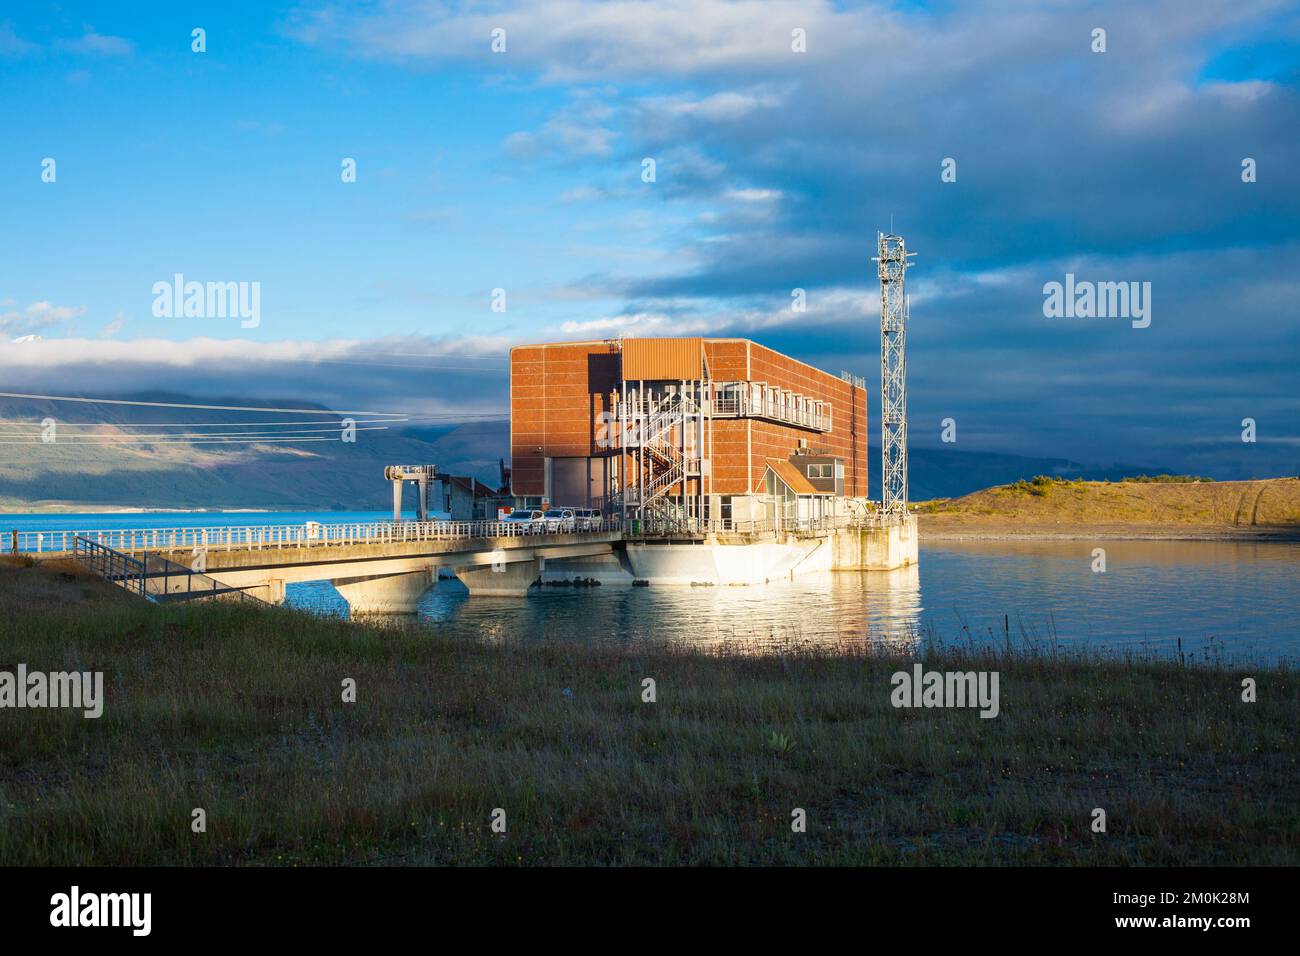 Un regard sur la vie en Nouvelle-Zélande : production d'énergie hydro-électrique à la centrale électrique de Tekapo B sur les rives du lac Pukaki, Twizel, Île du Sud. Banque D'Images